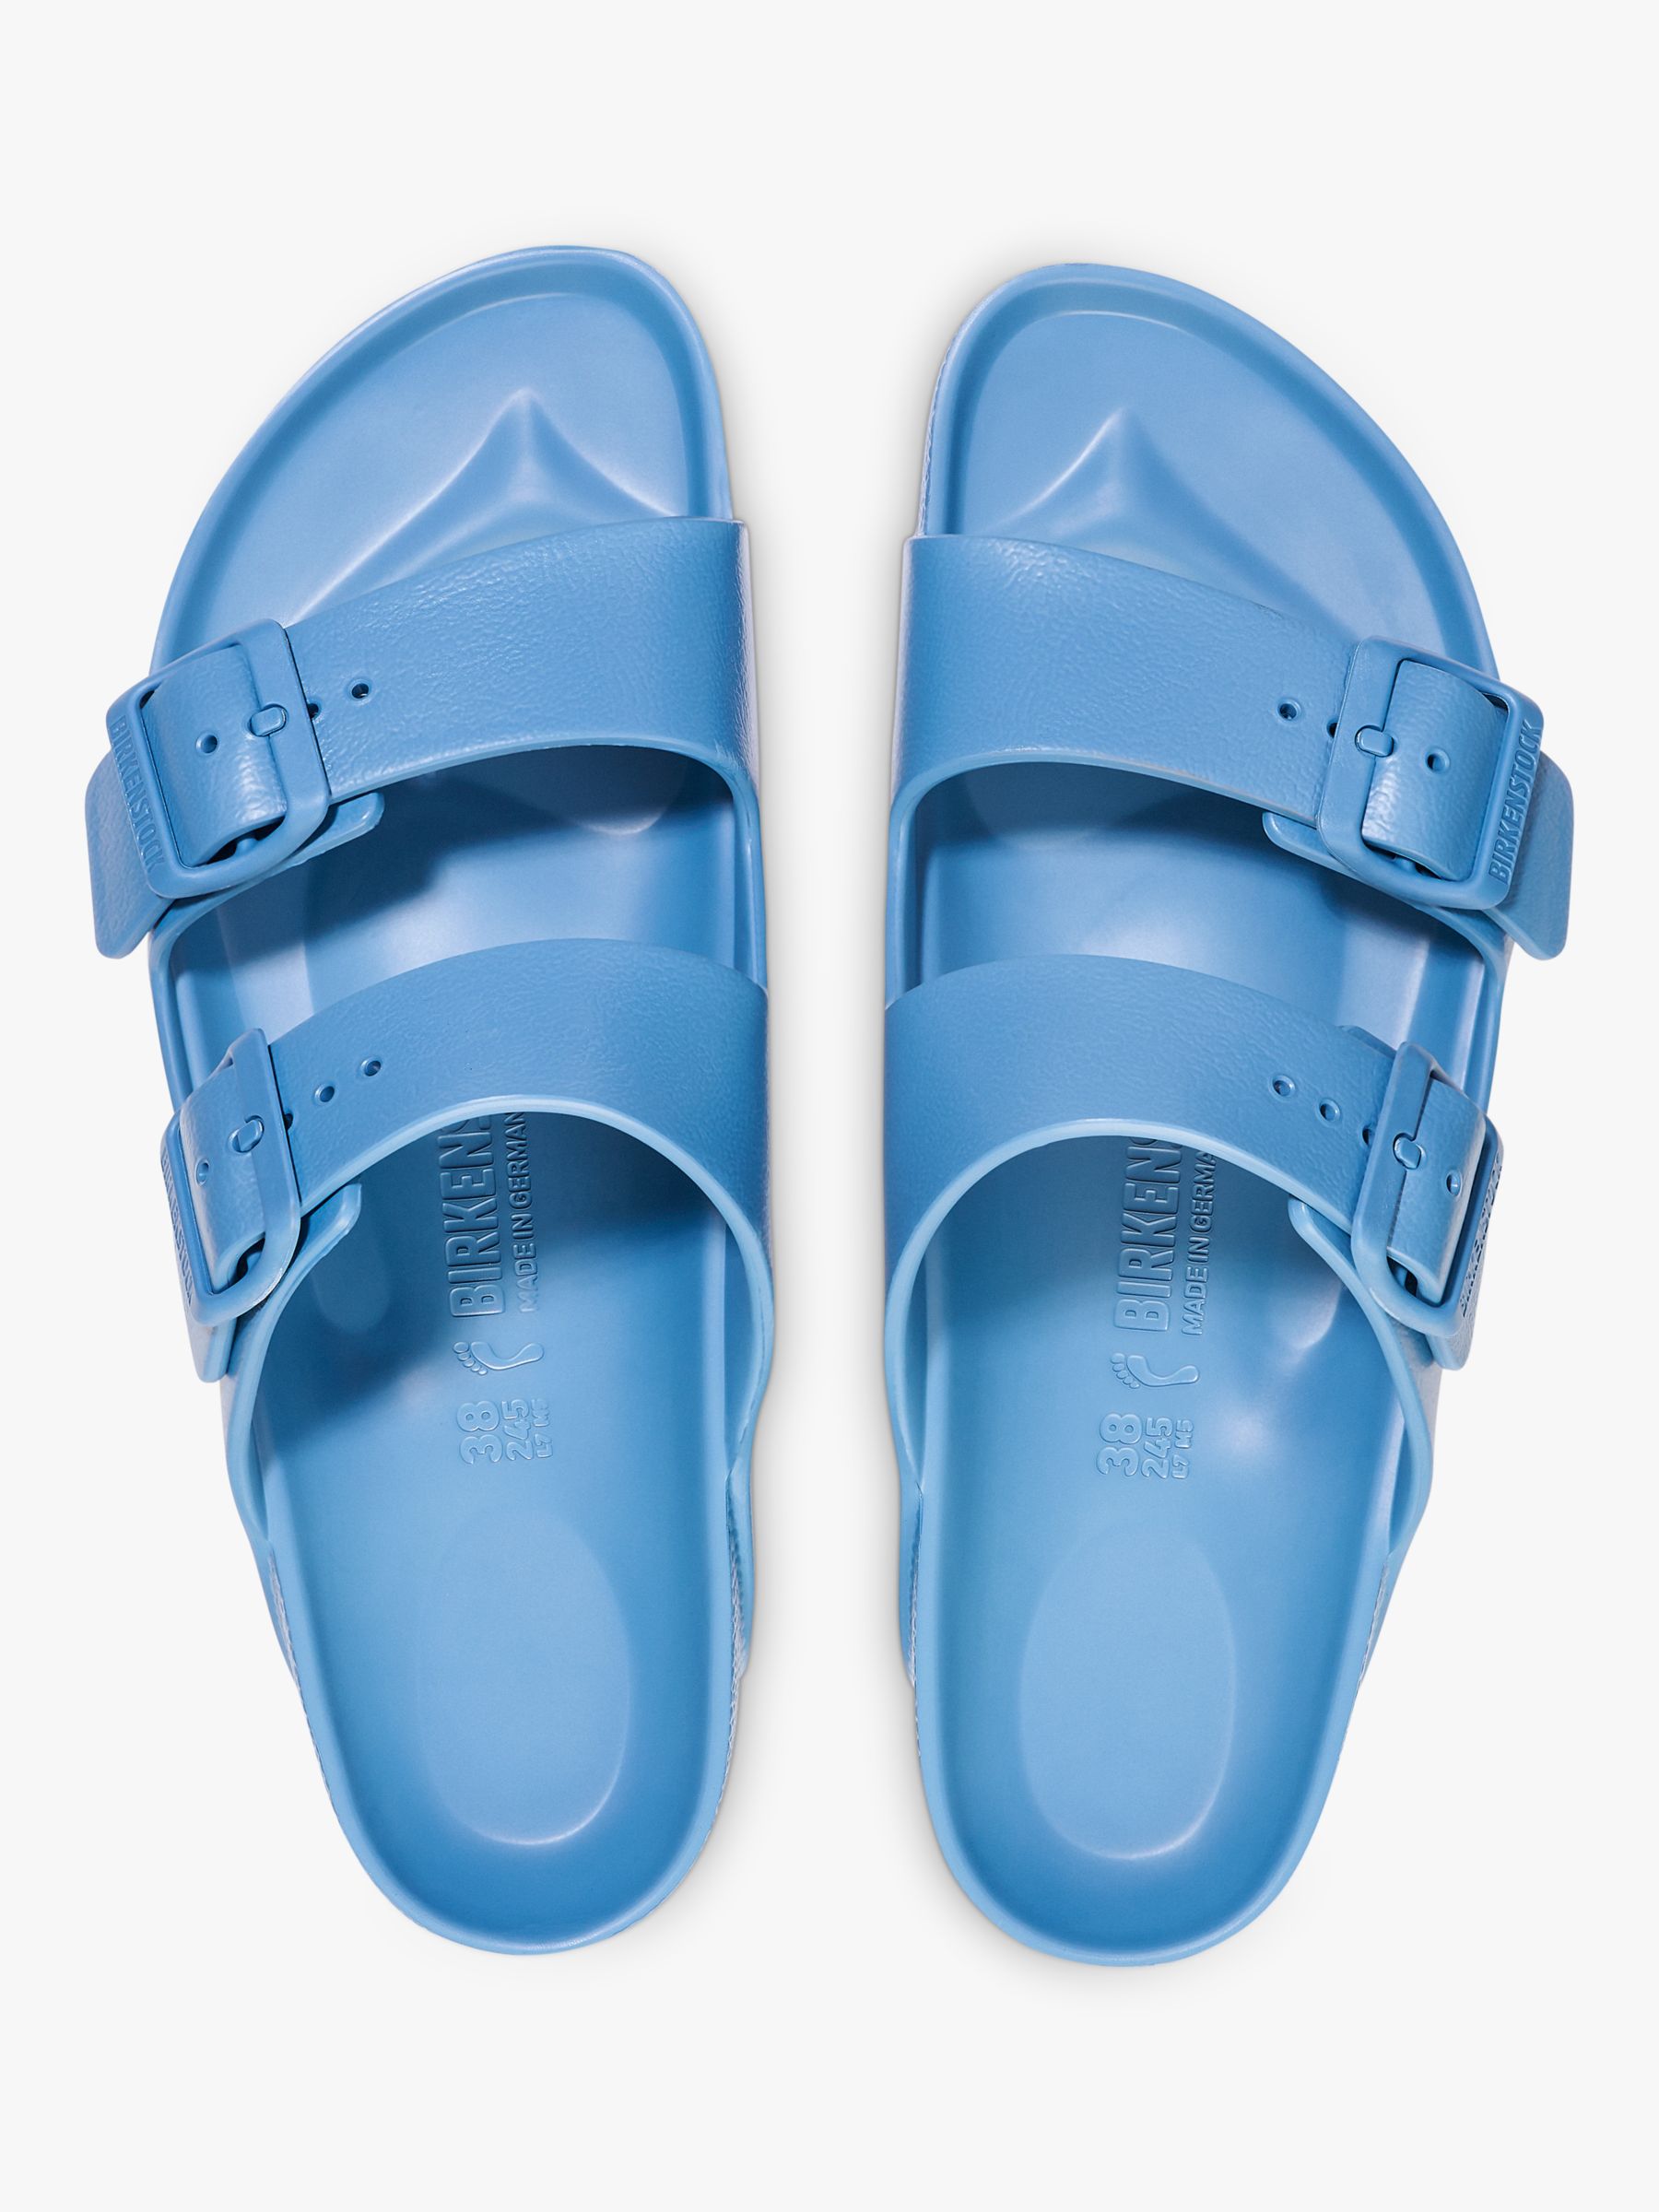 Birkenstock Arizona EVA Double Strap Sandals, Elemental Blue, 36